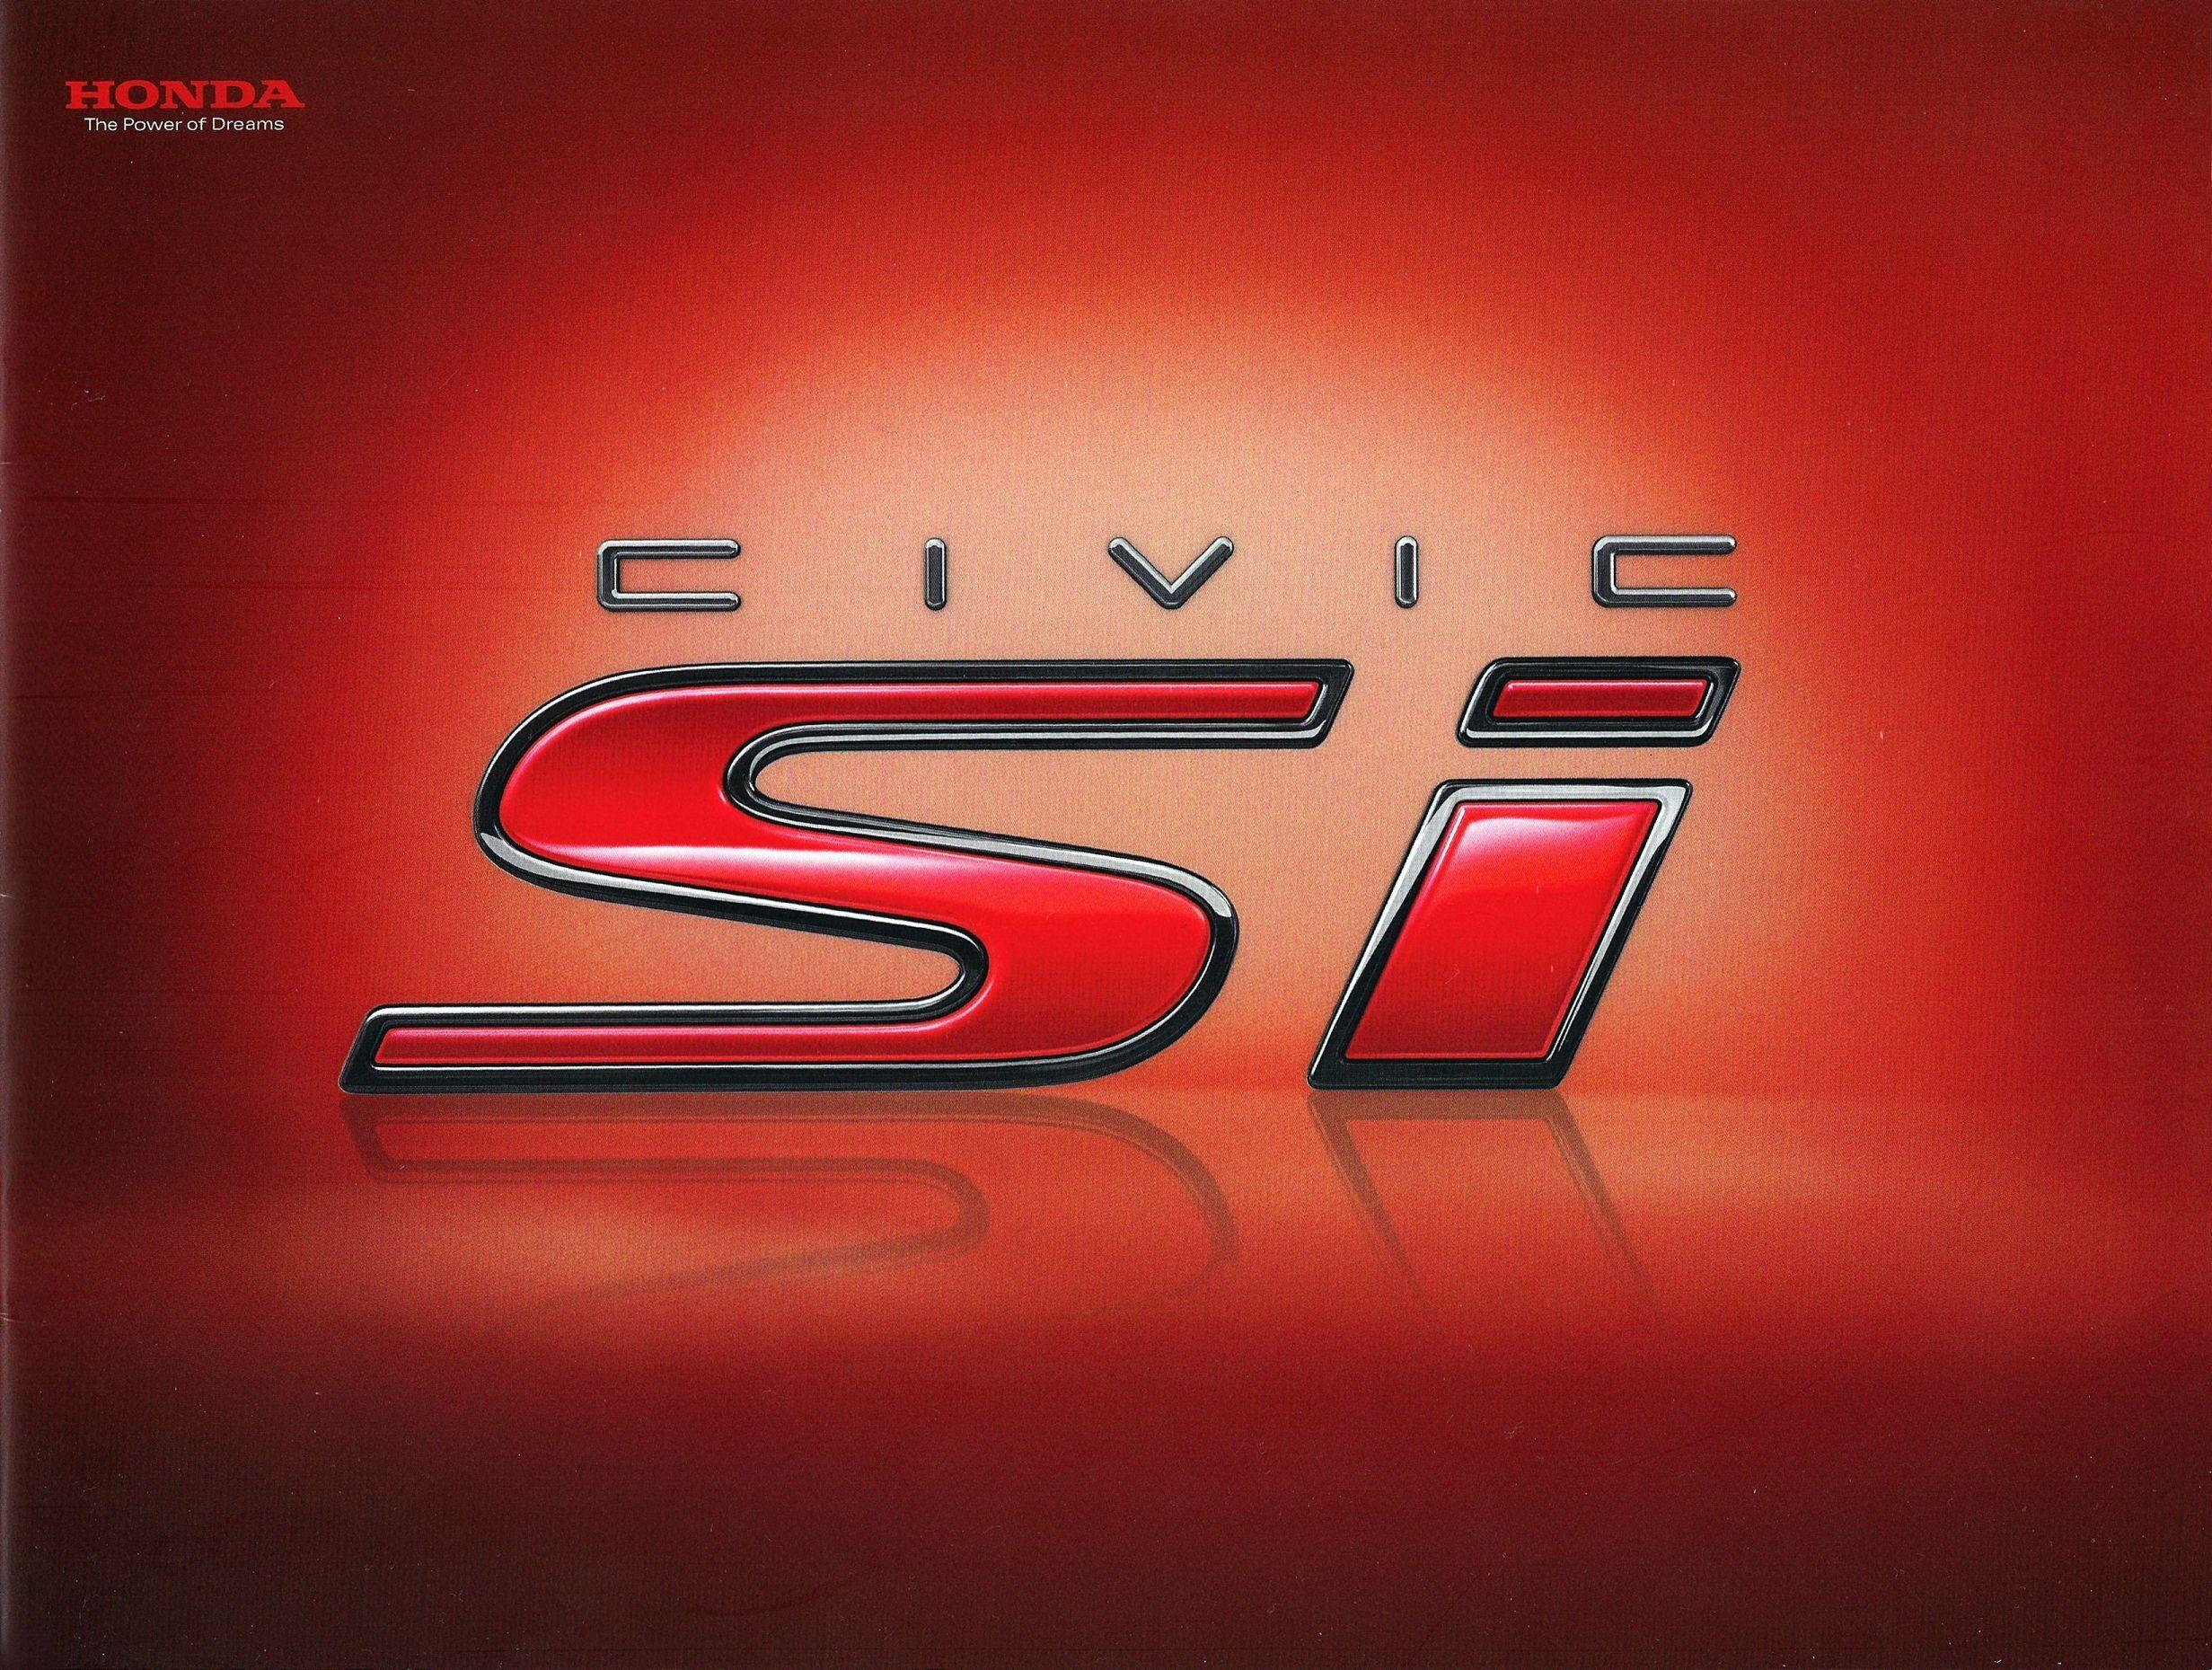 Honda Civic Si Logo Wallpaper | Images and Photos finder